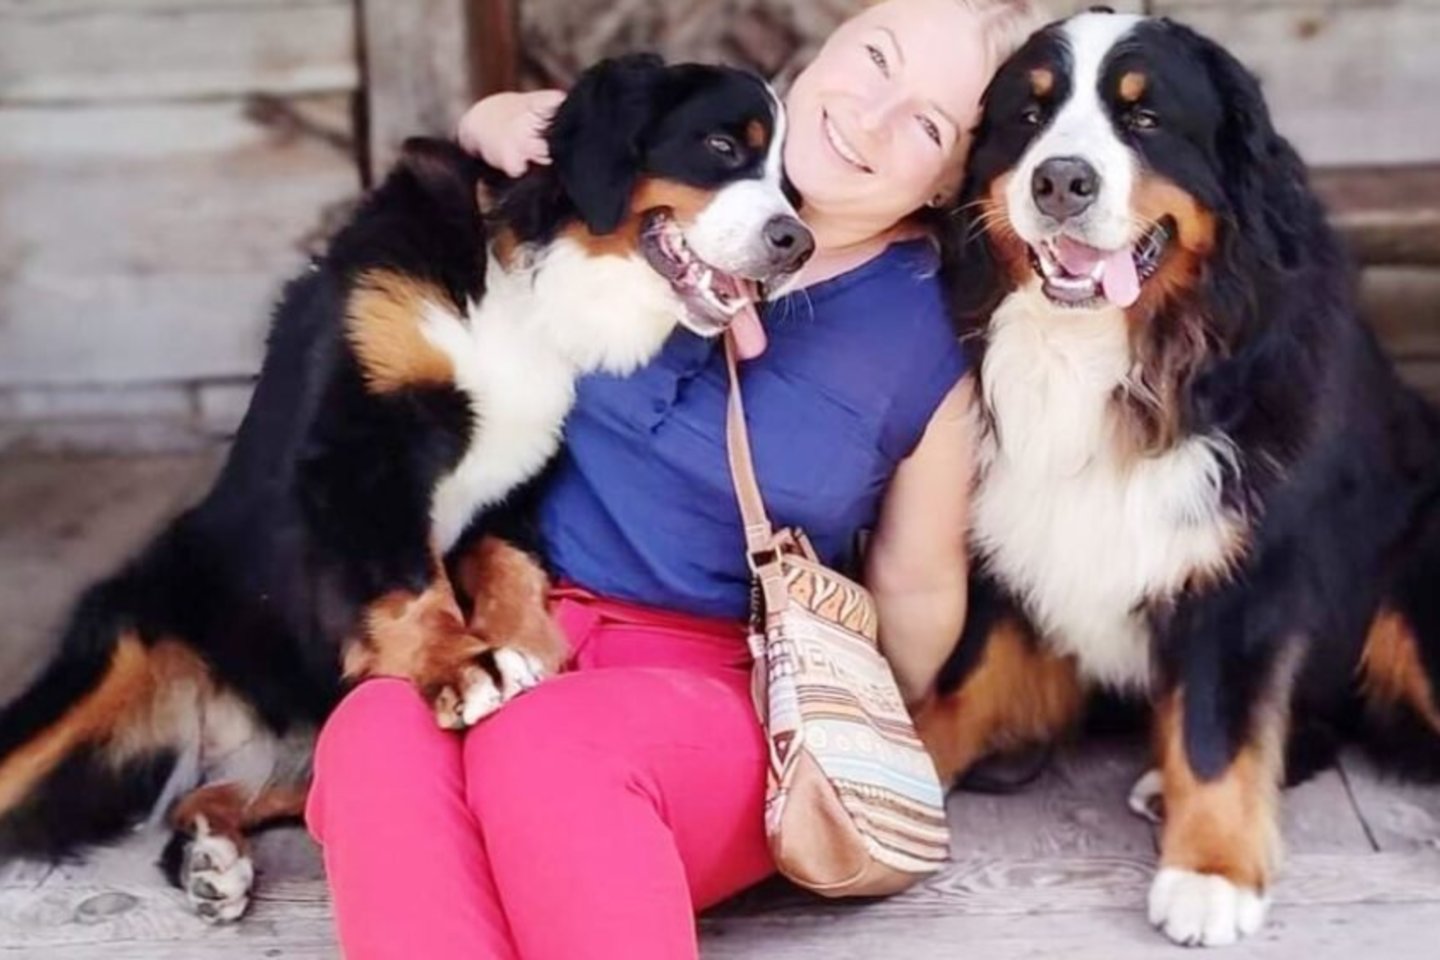  Viltė Liaugminaitė – Berno zenenhundų veisėja, įvairių šunų trenerė yra tiesiog laiminga savo veikloje.<br> Asmeninio archyvo nuotr.